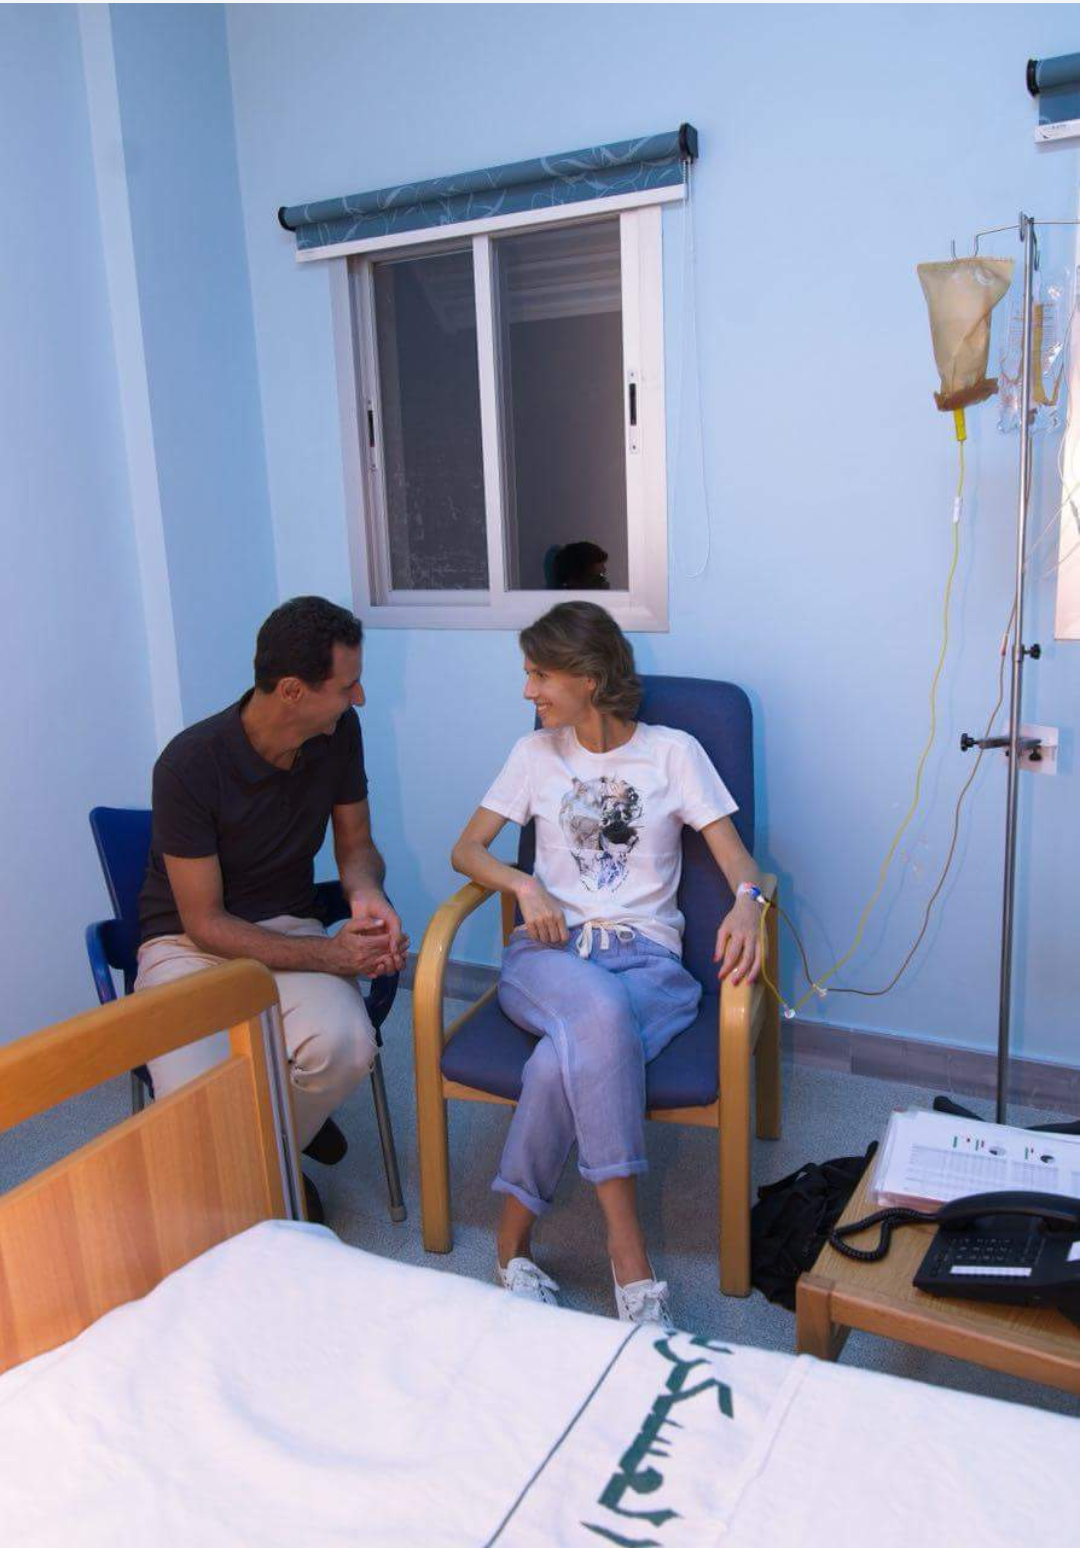 أسماء الأسد تتلقى علاجها في إحدى المشافي الحكومية